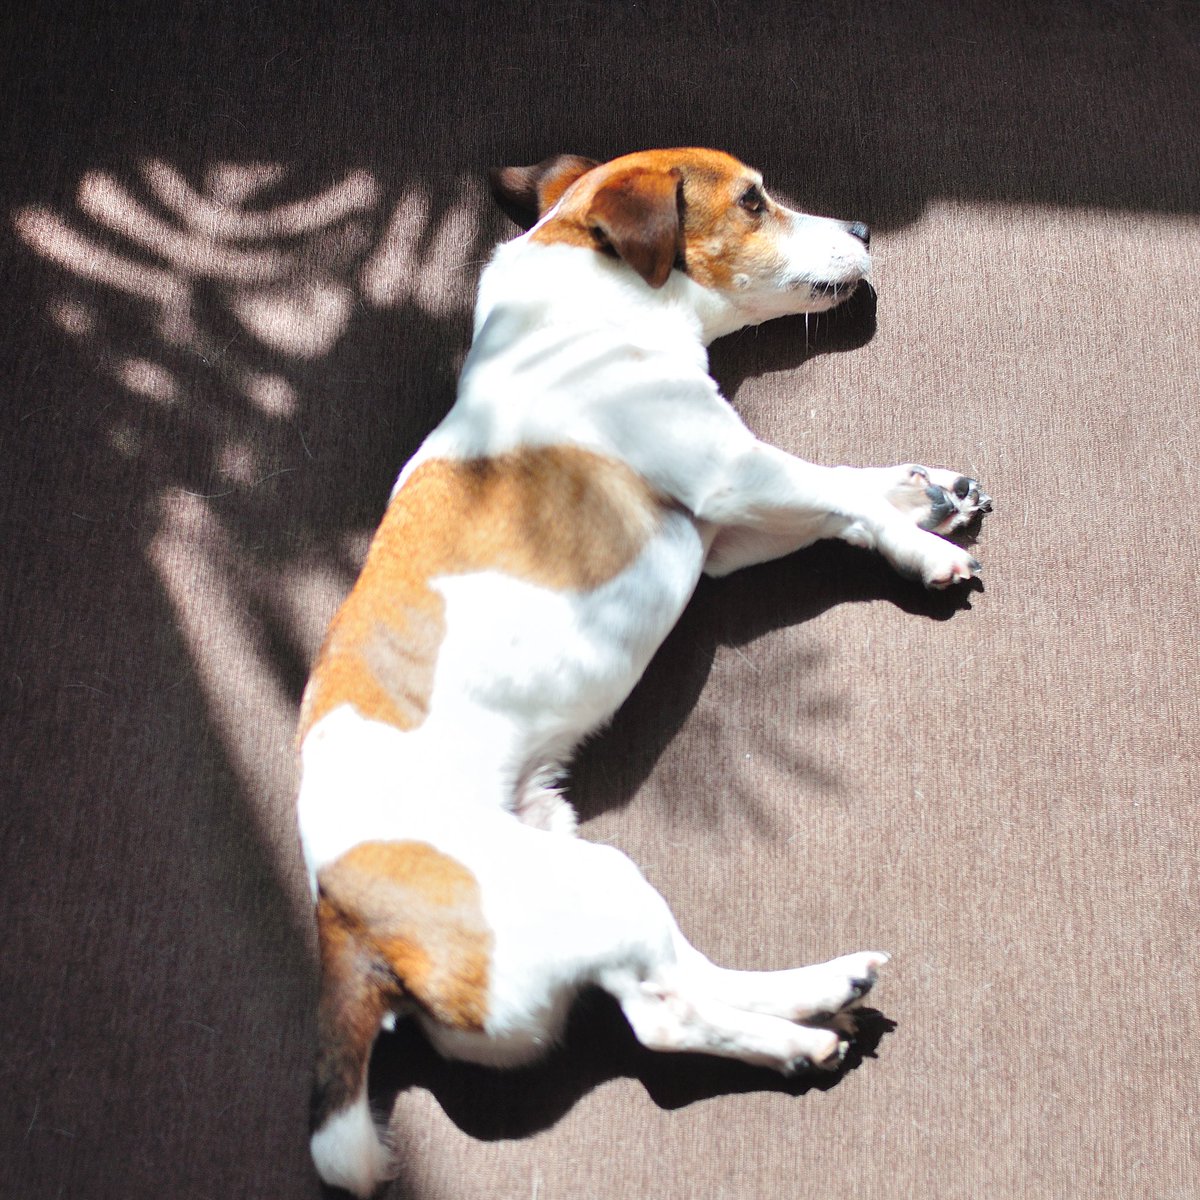 ポリネシアン柄のような影の中に横たわるイヌ

#ジャックラッセルテリア 
#jackrussellterrier
#nikon 
#dog 
#犬